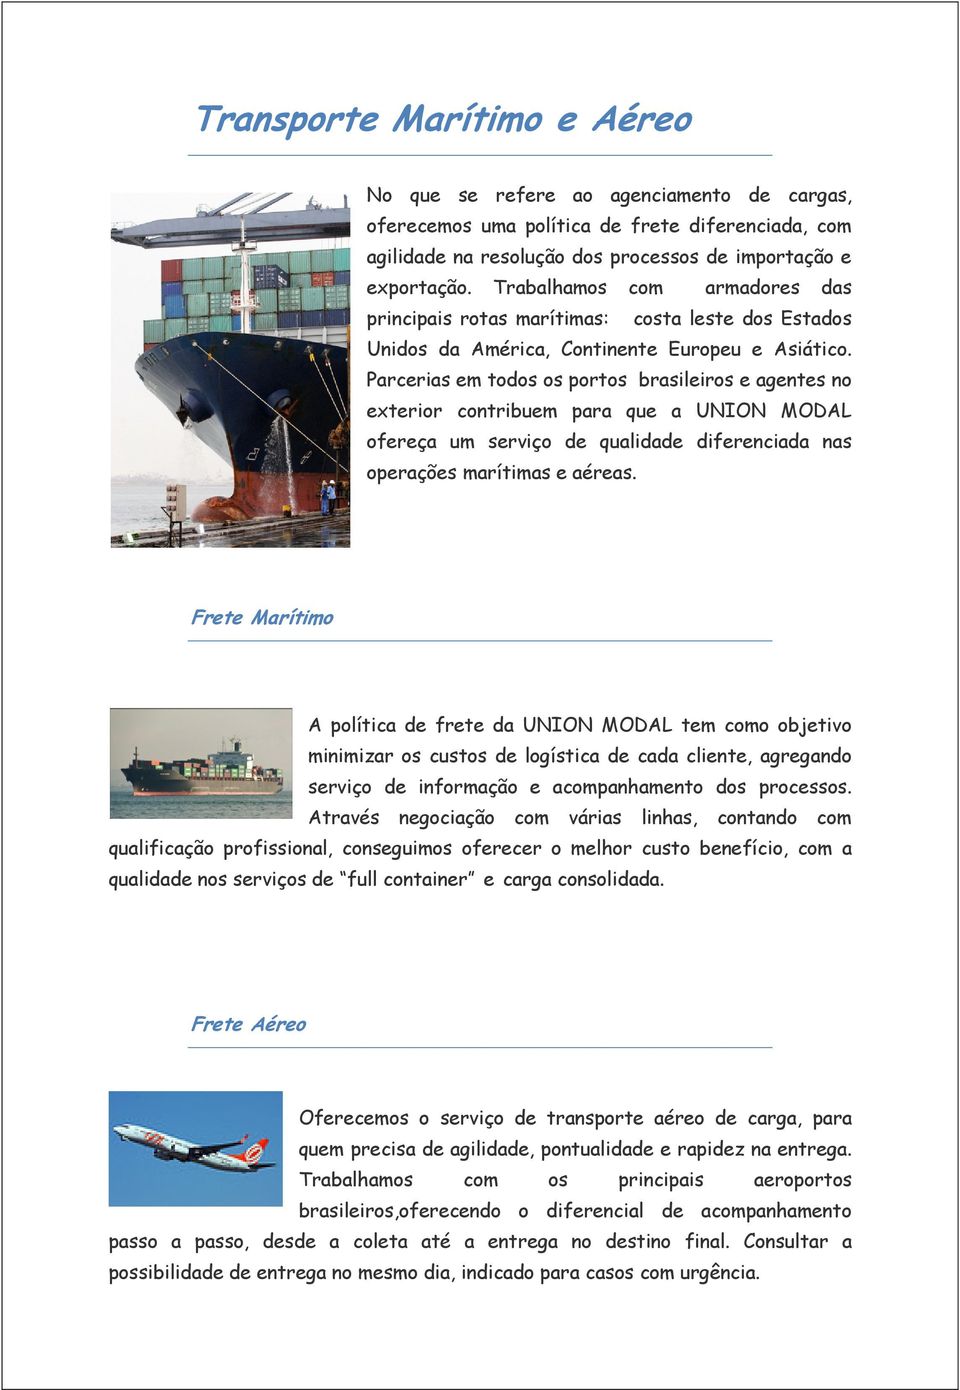 Parcerias em todos os portos brasileiros e agentes no exterior contribuem para que a UNION MODAL ofereça um serviço de qualidade diferenciada nas operações marítimas e aéreas.